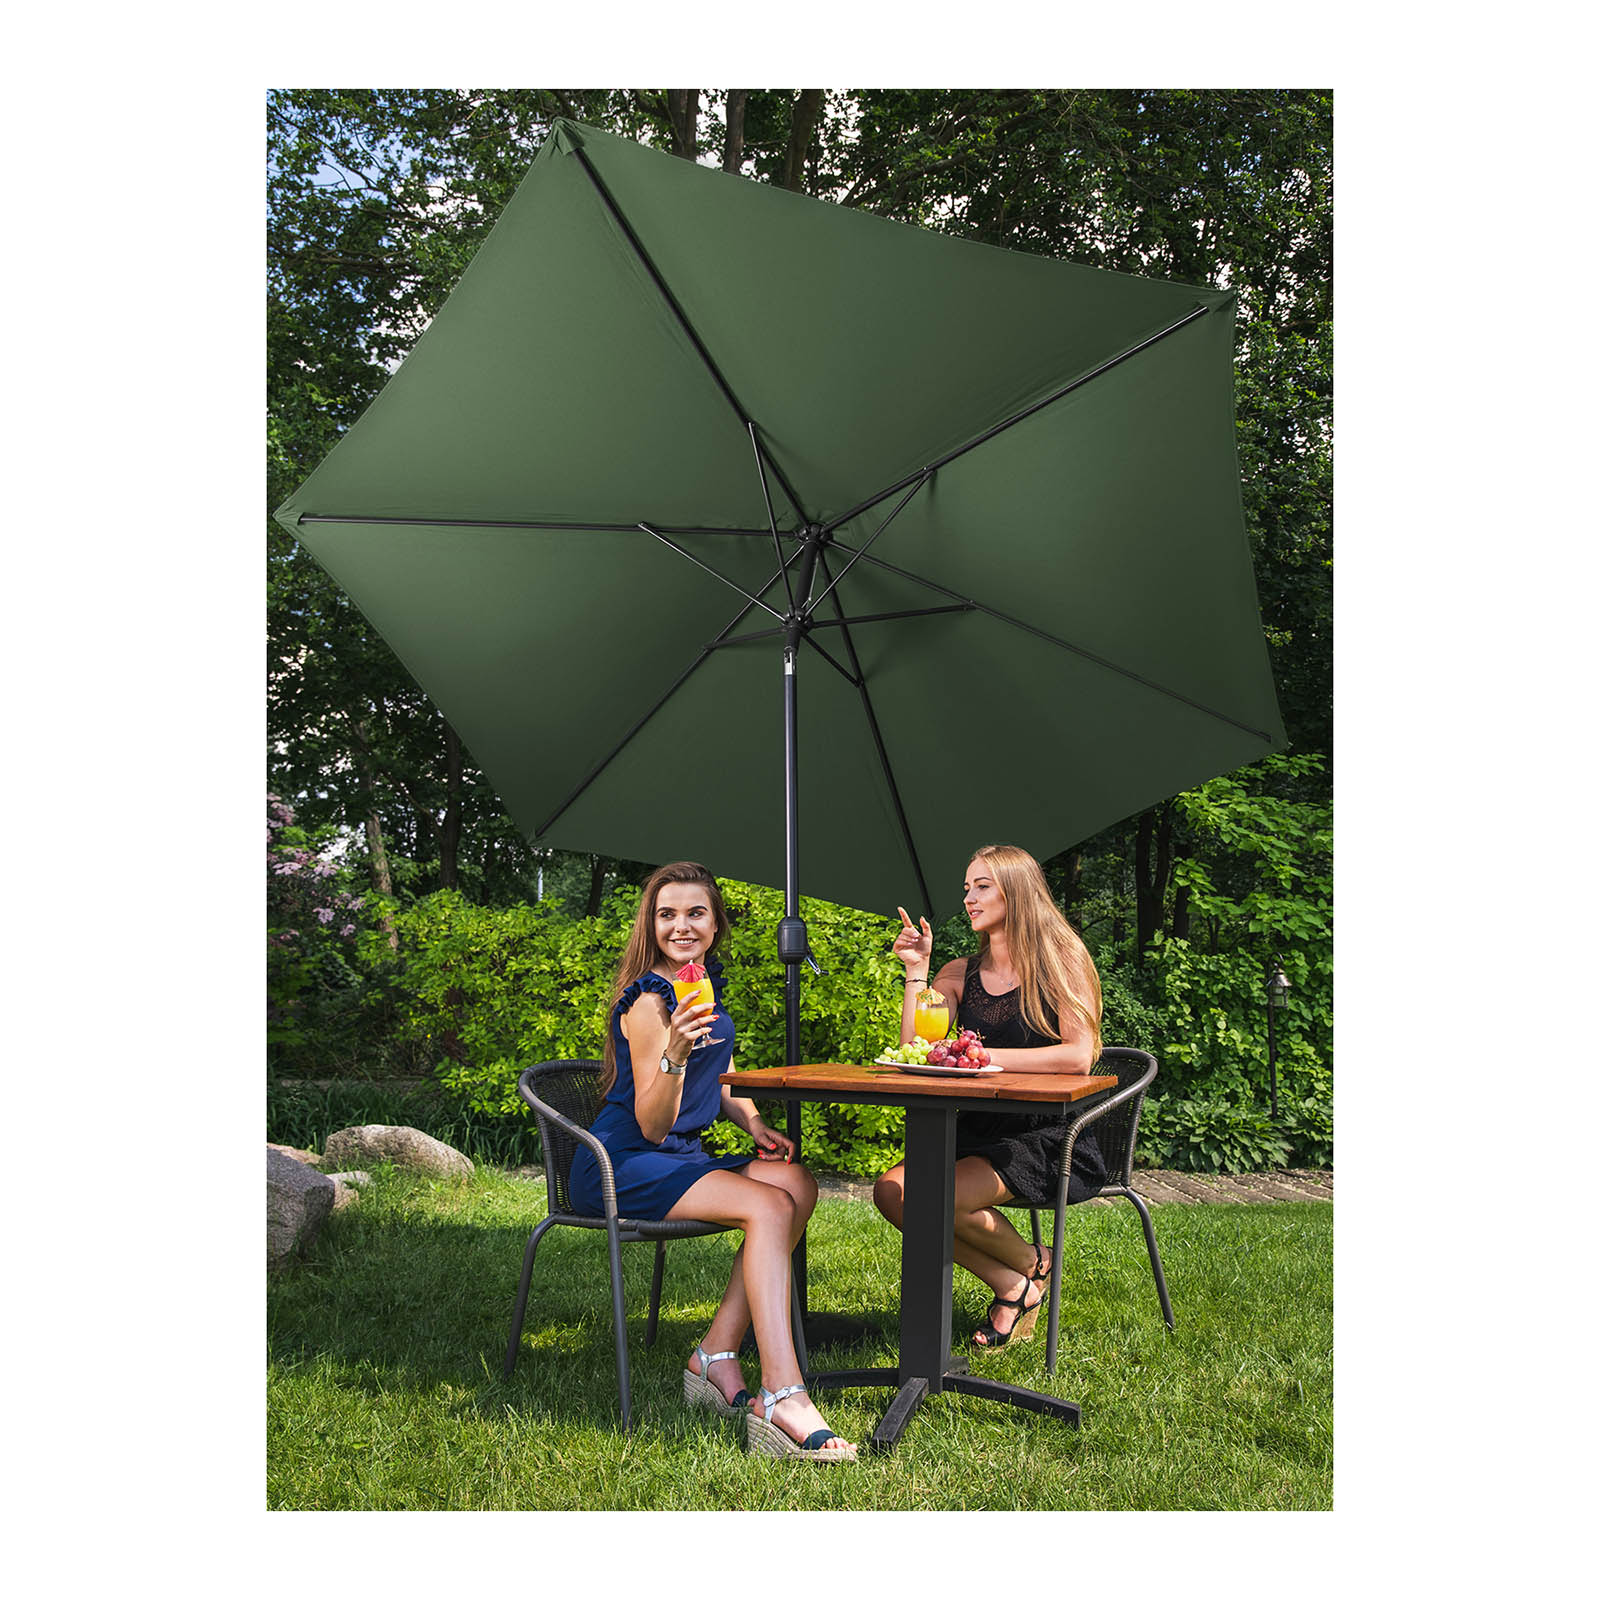 Sonnenschirm groß - grün - sechseckig - Ø 270 cm - neigbar